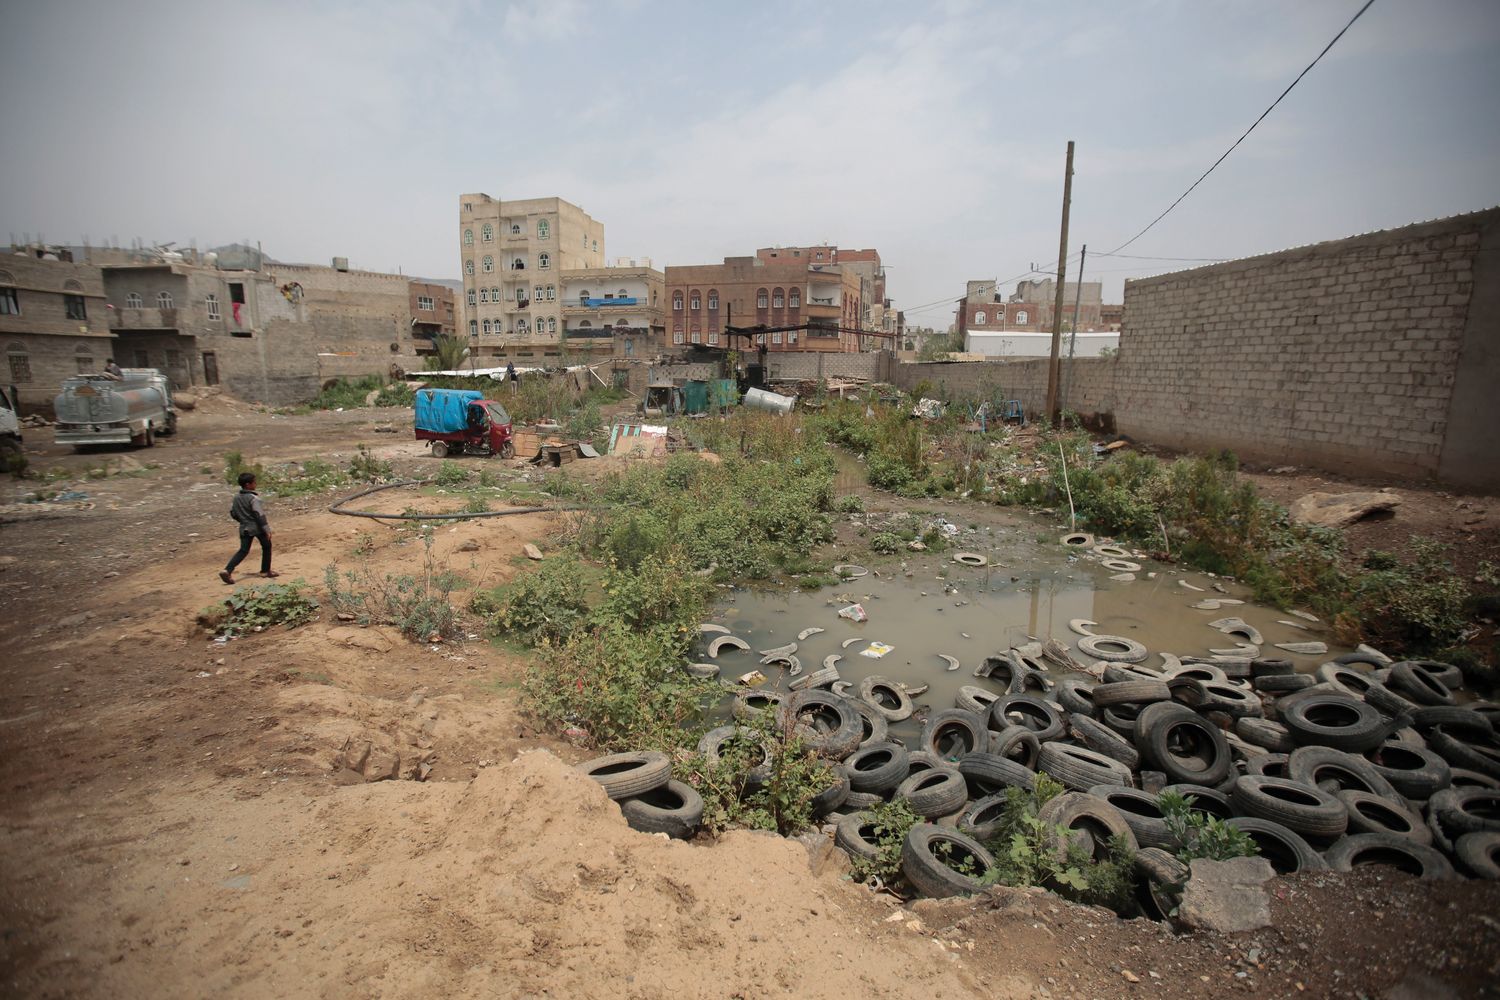 A boy walks beside a sewage swamp in Yemen.